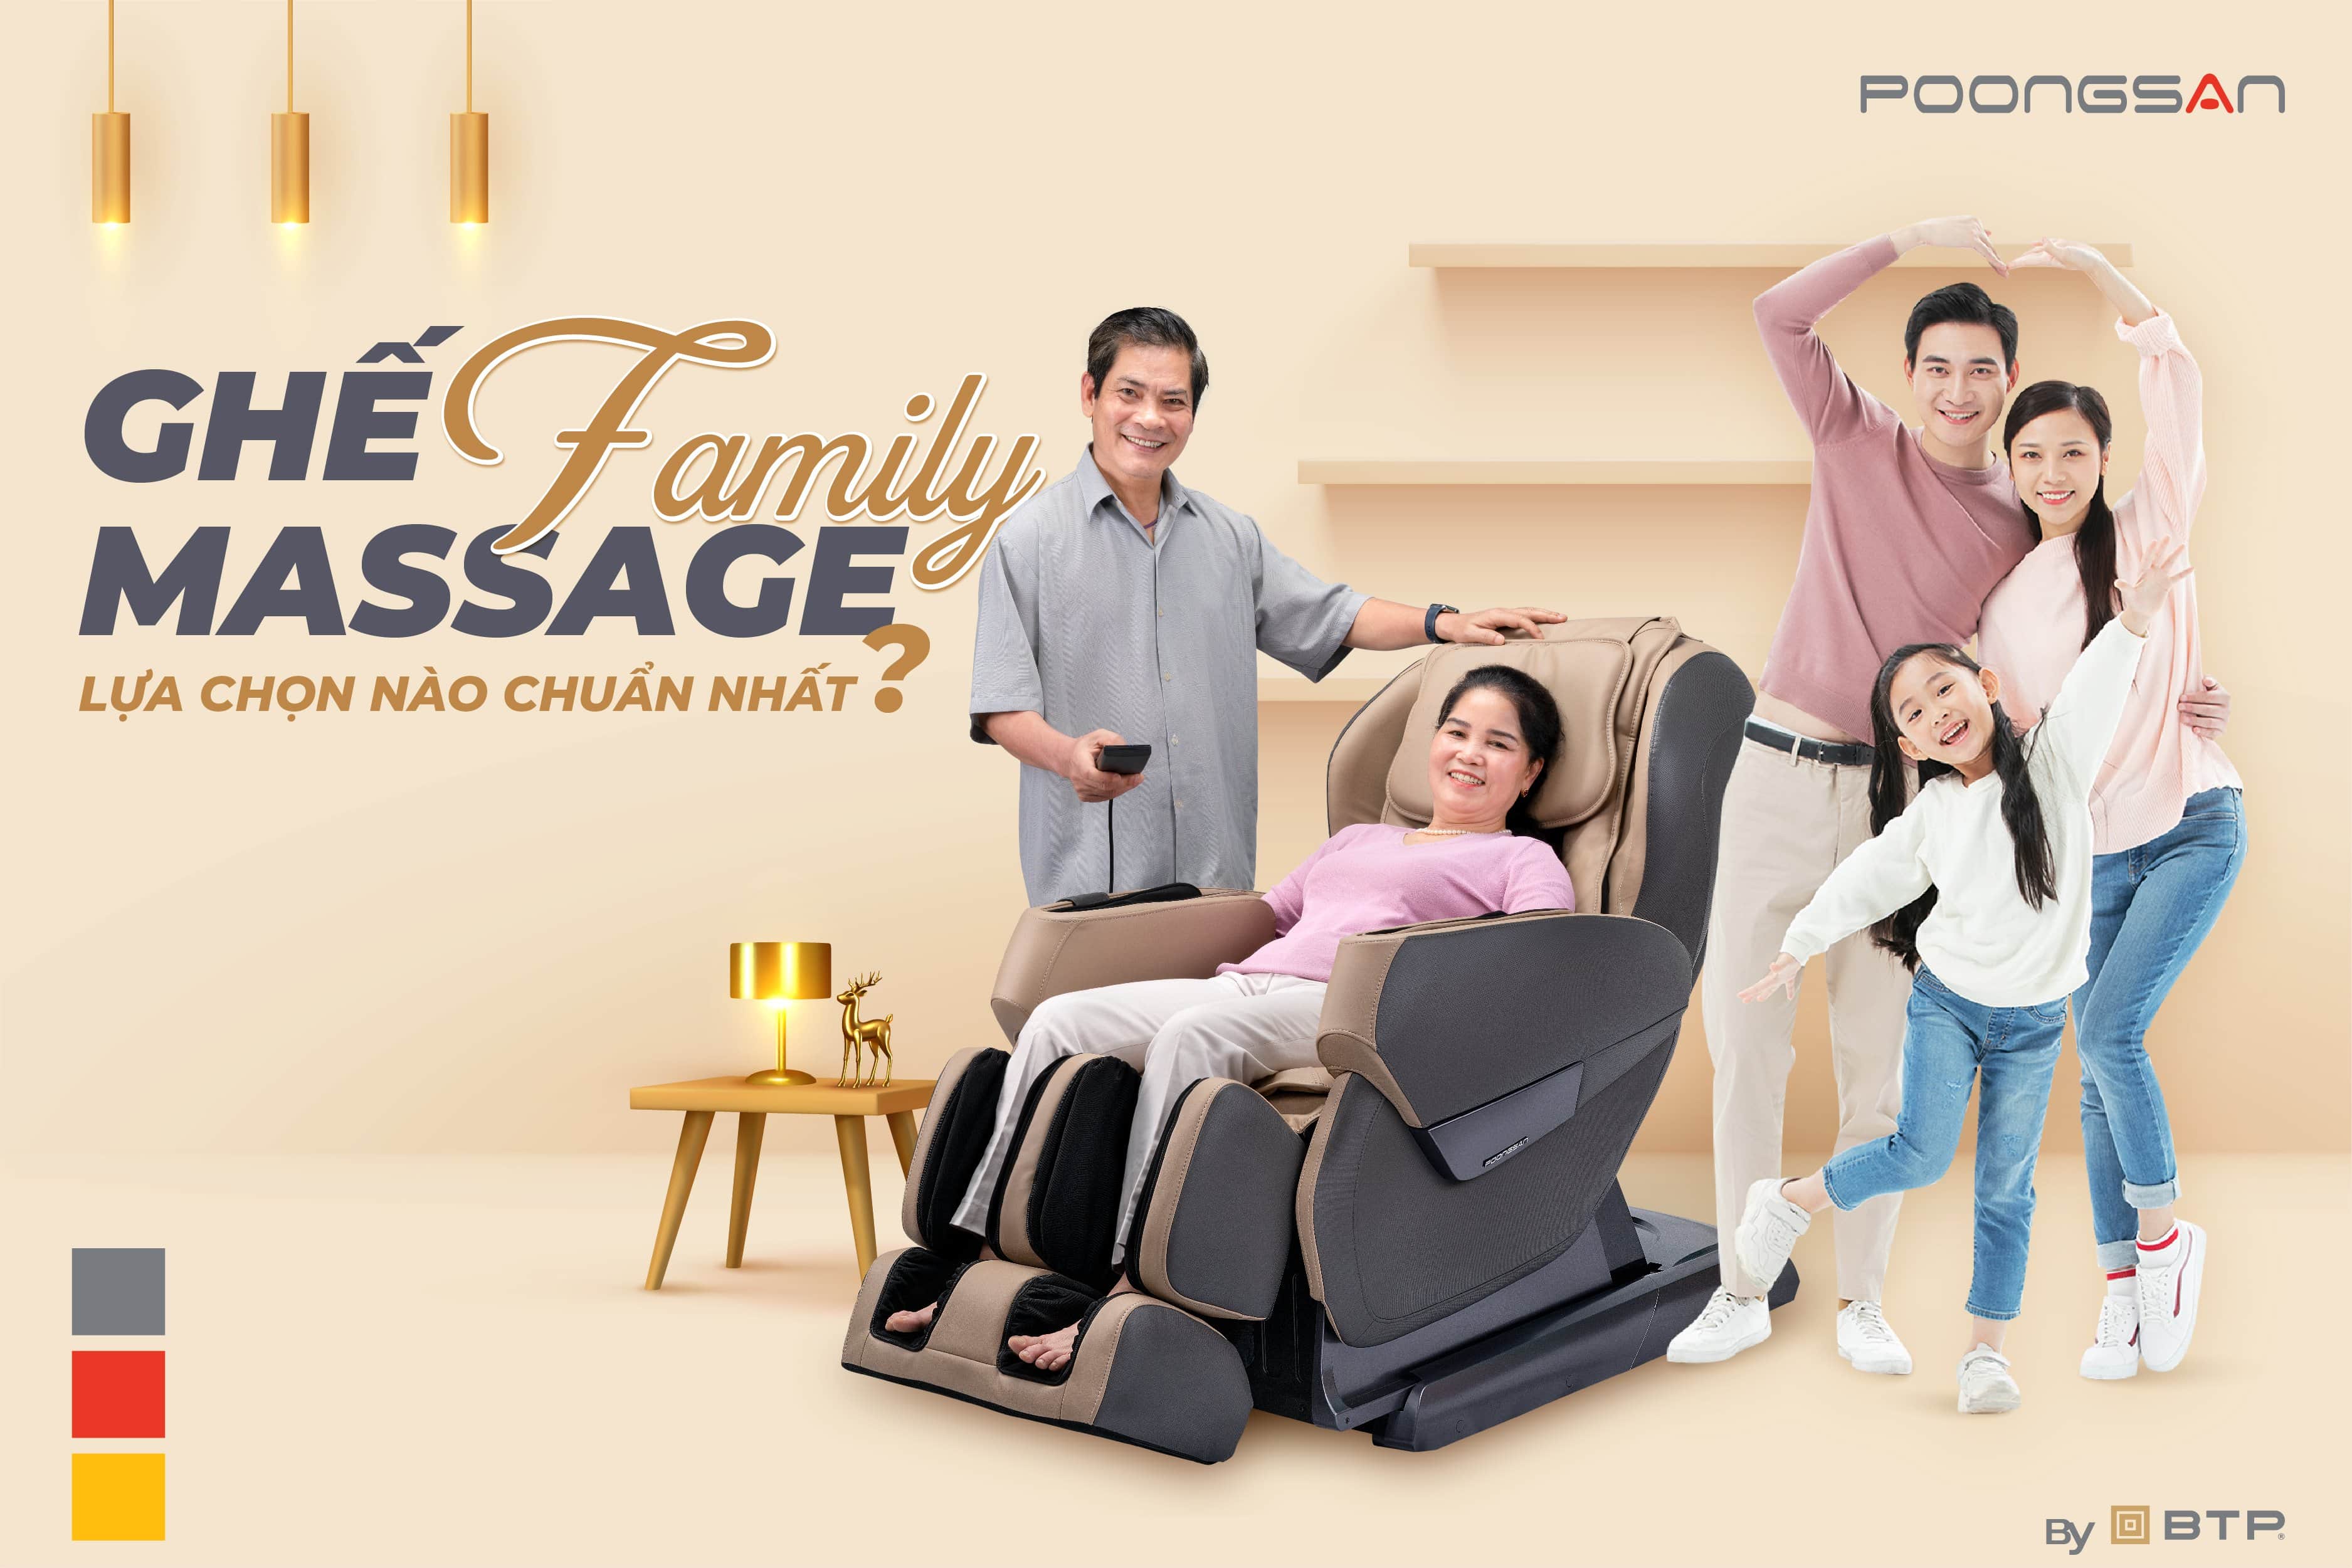 Ghế massage family cho gia đình lựa chọn nào chuẩn nhất